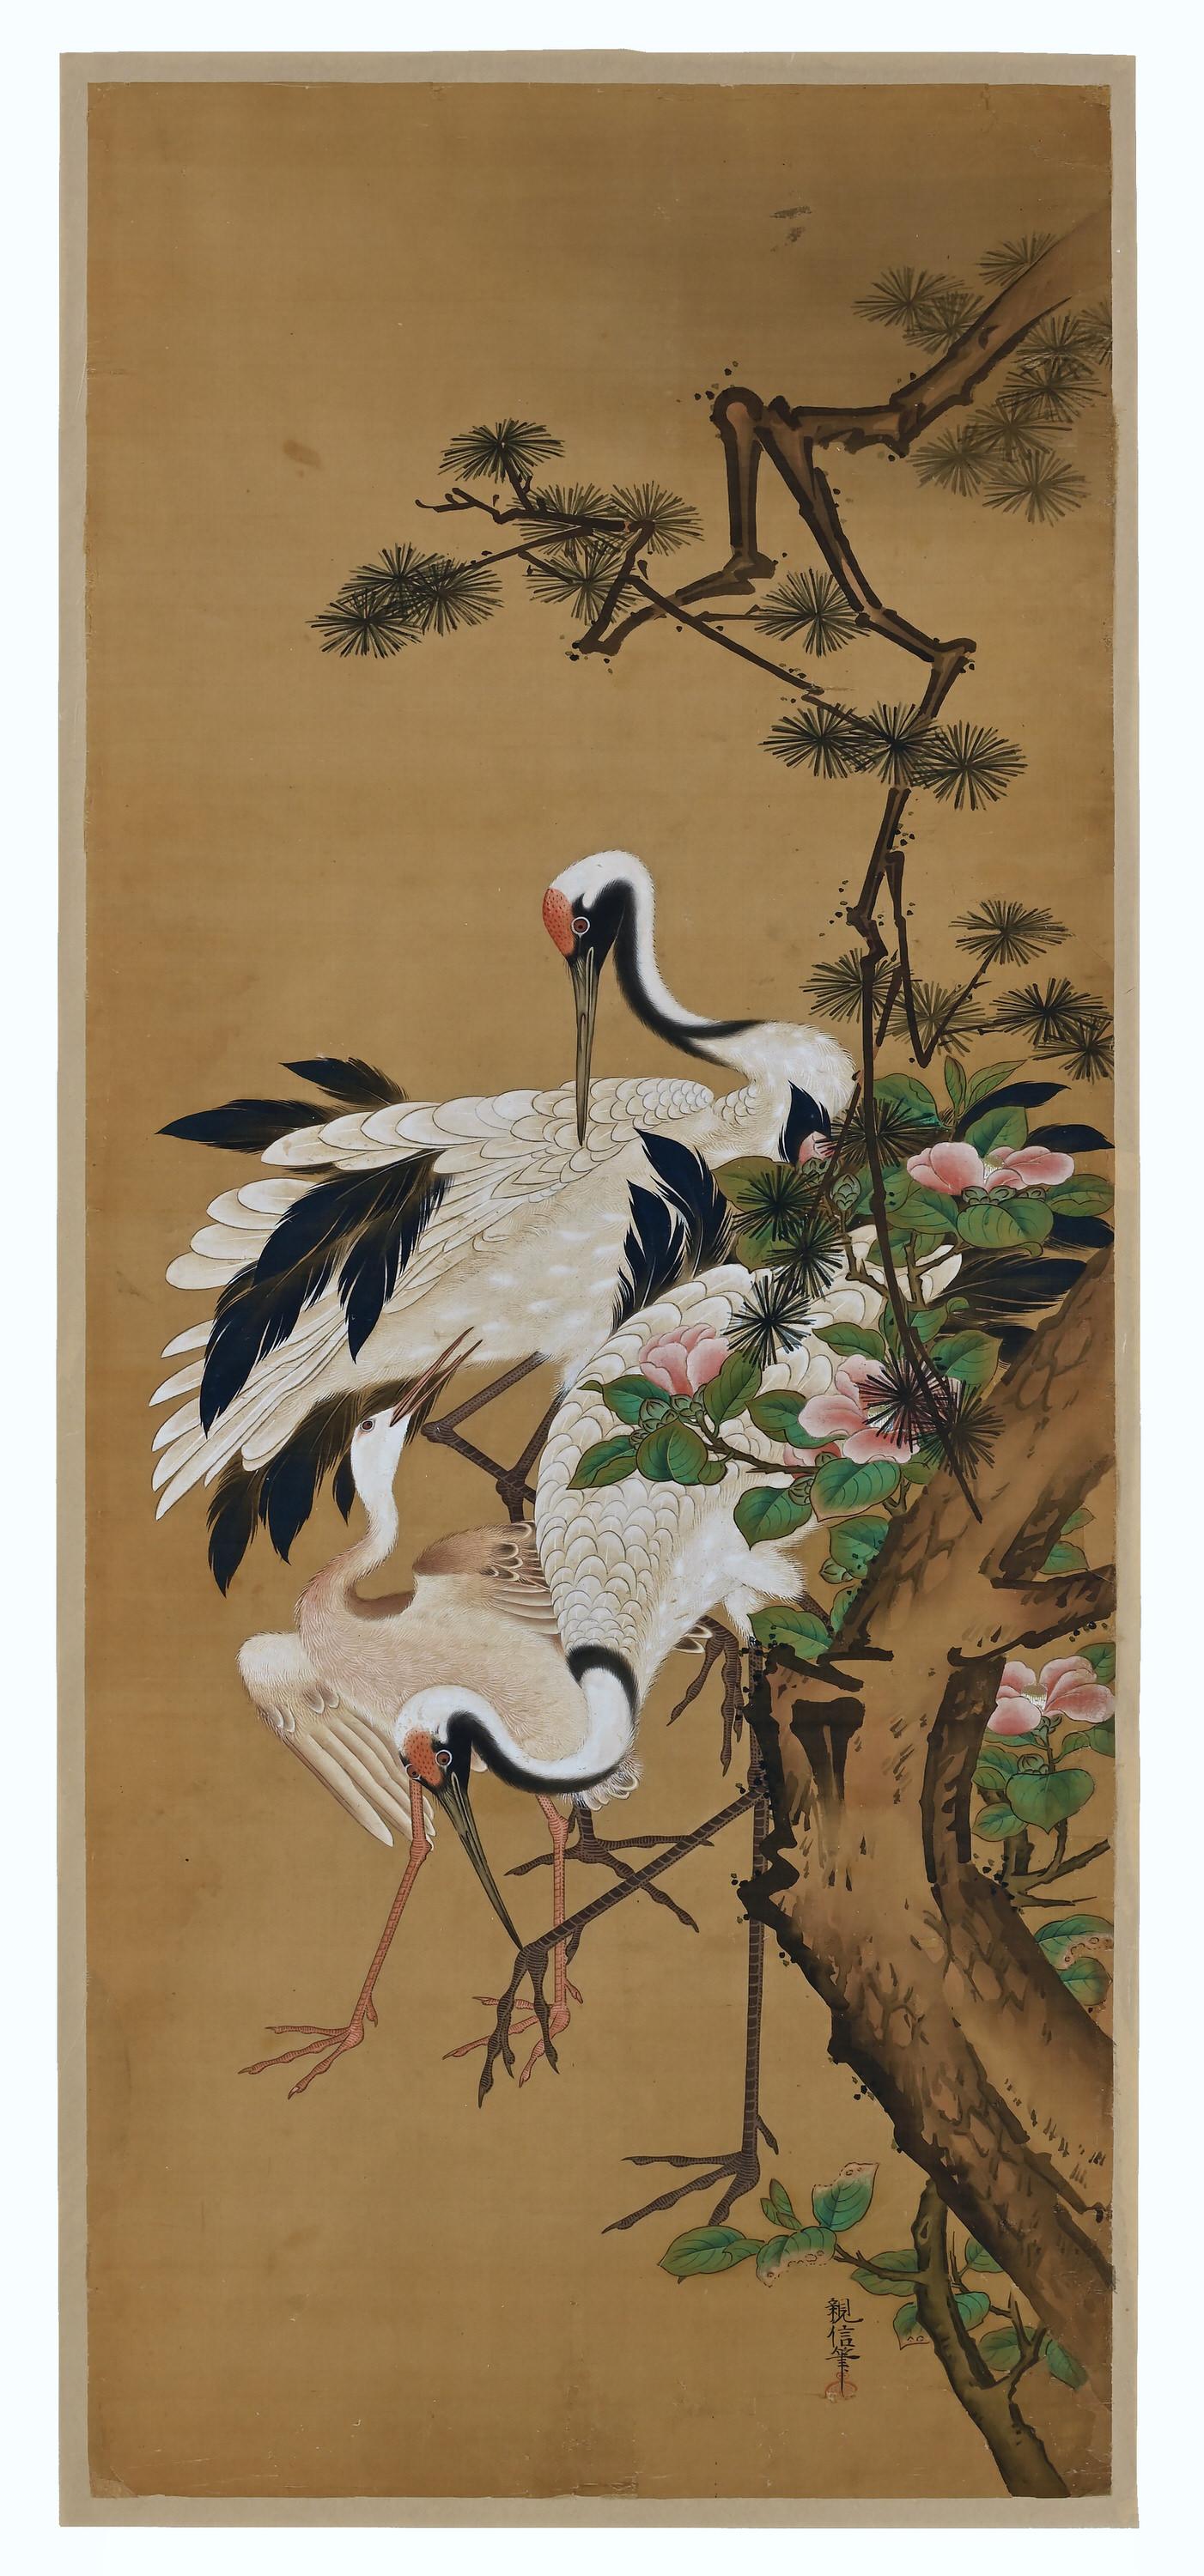 Edo 19th Century Japanese Silk Painting by Kano Chikanobu, Crane, Pine & Camelia For Sale